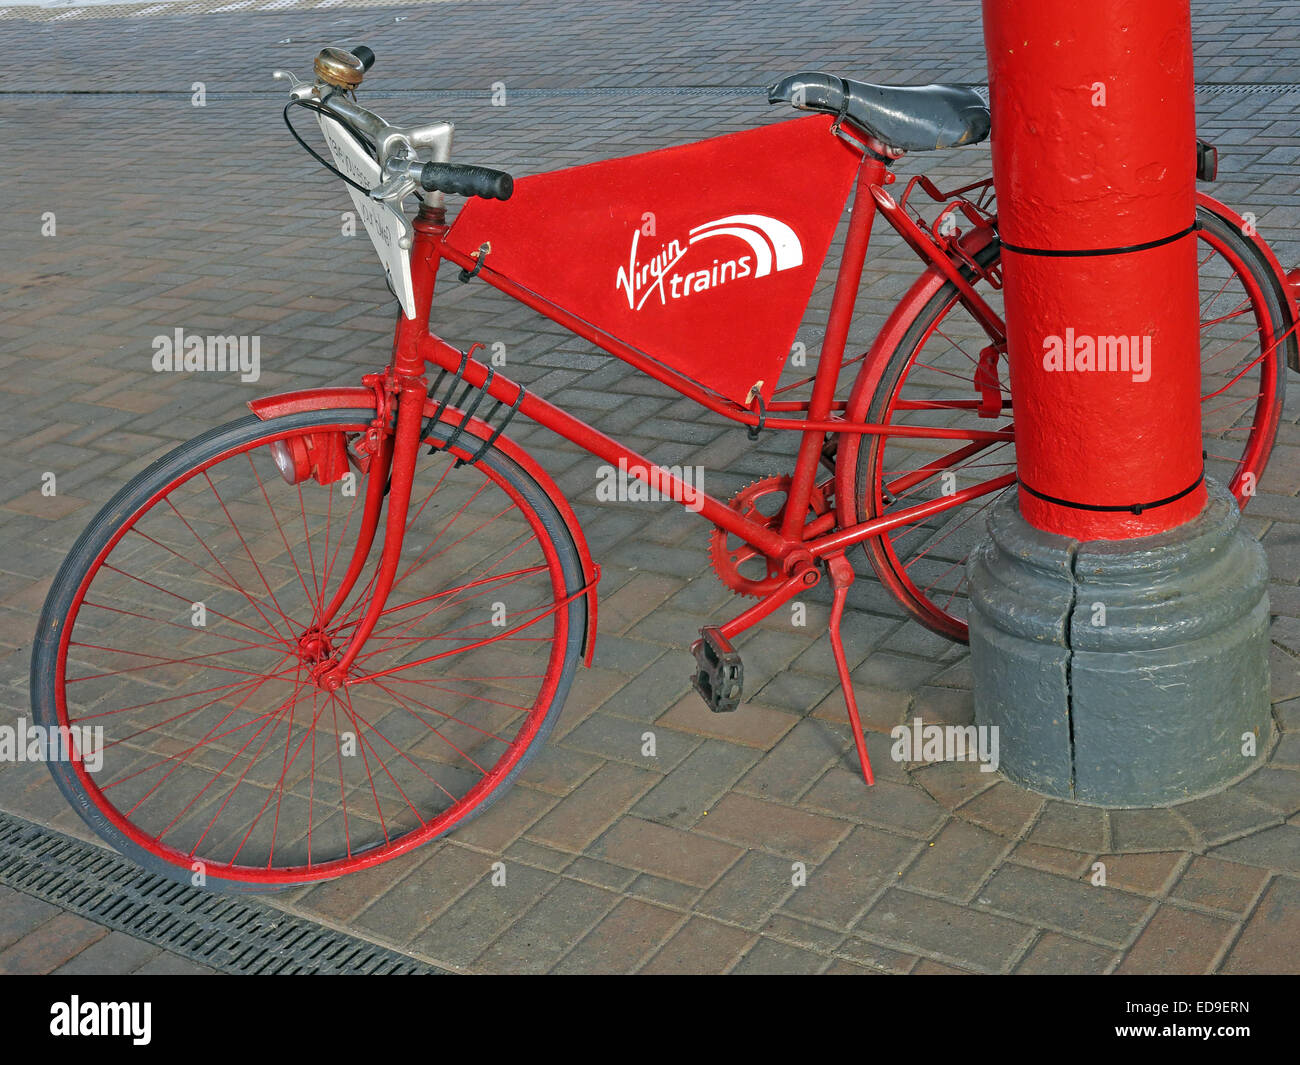 Bienvenue à la gare de Warrington Bank Quay, Cheshire, Angleterre Royaume-uni Vélo rouge Banque D'Images